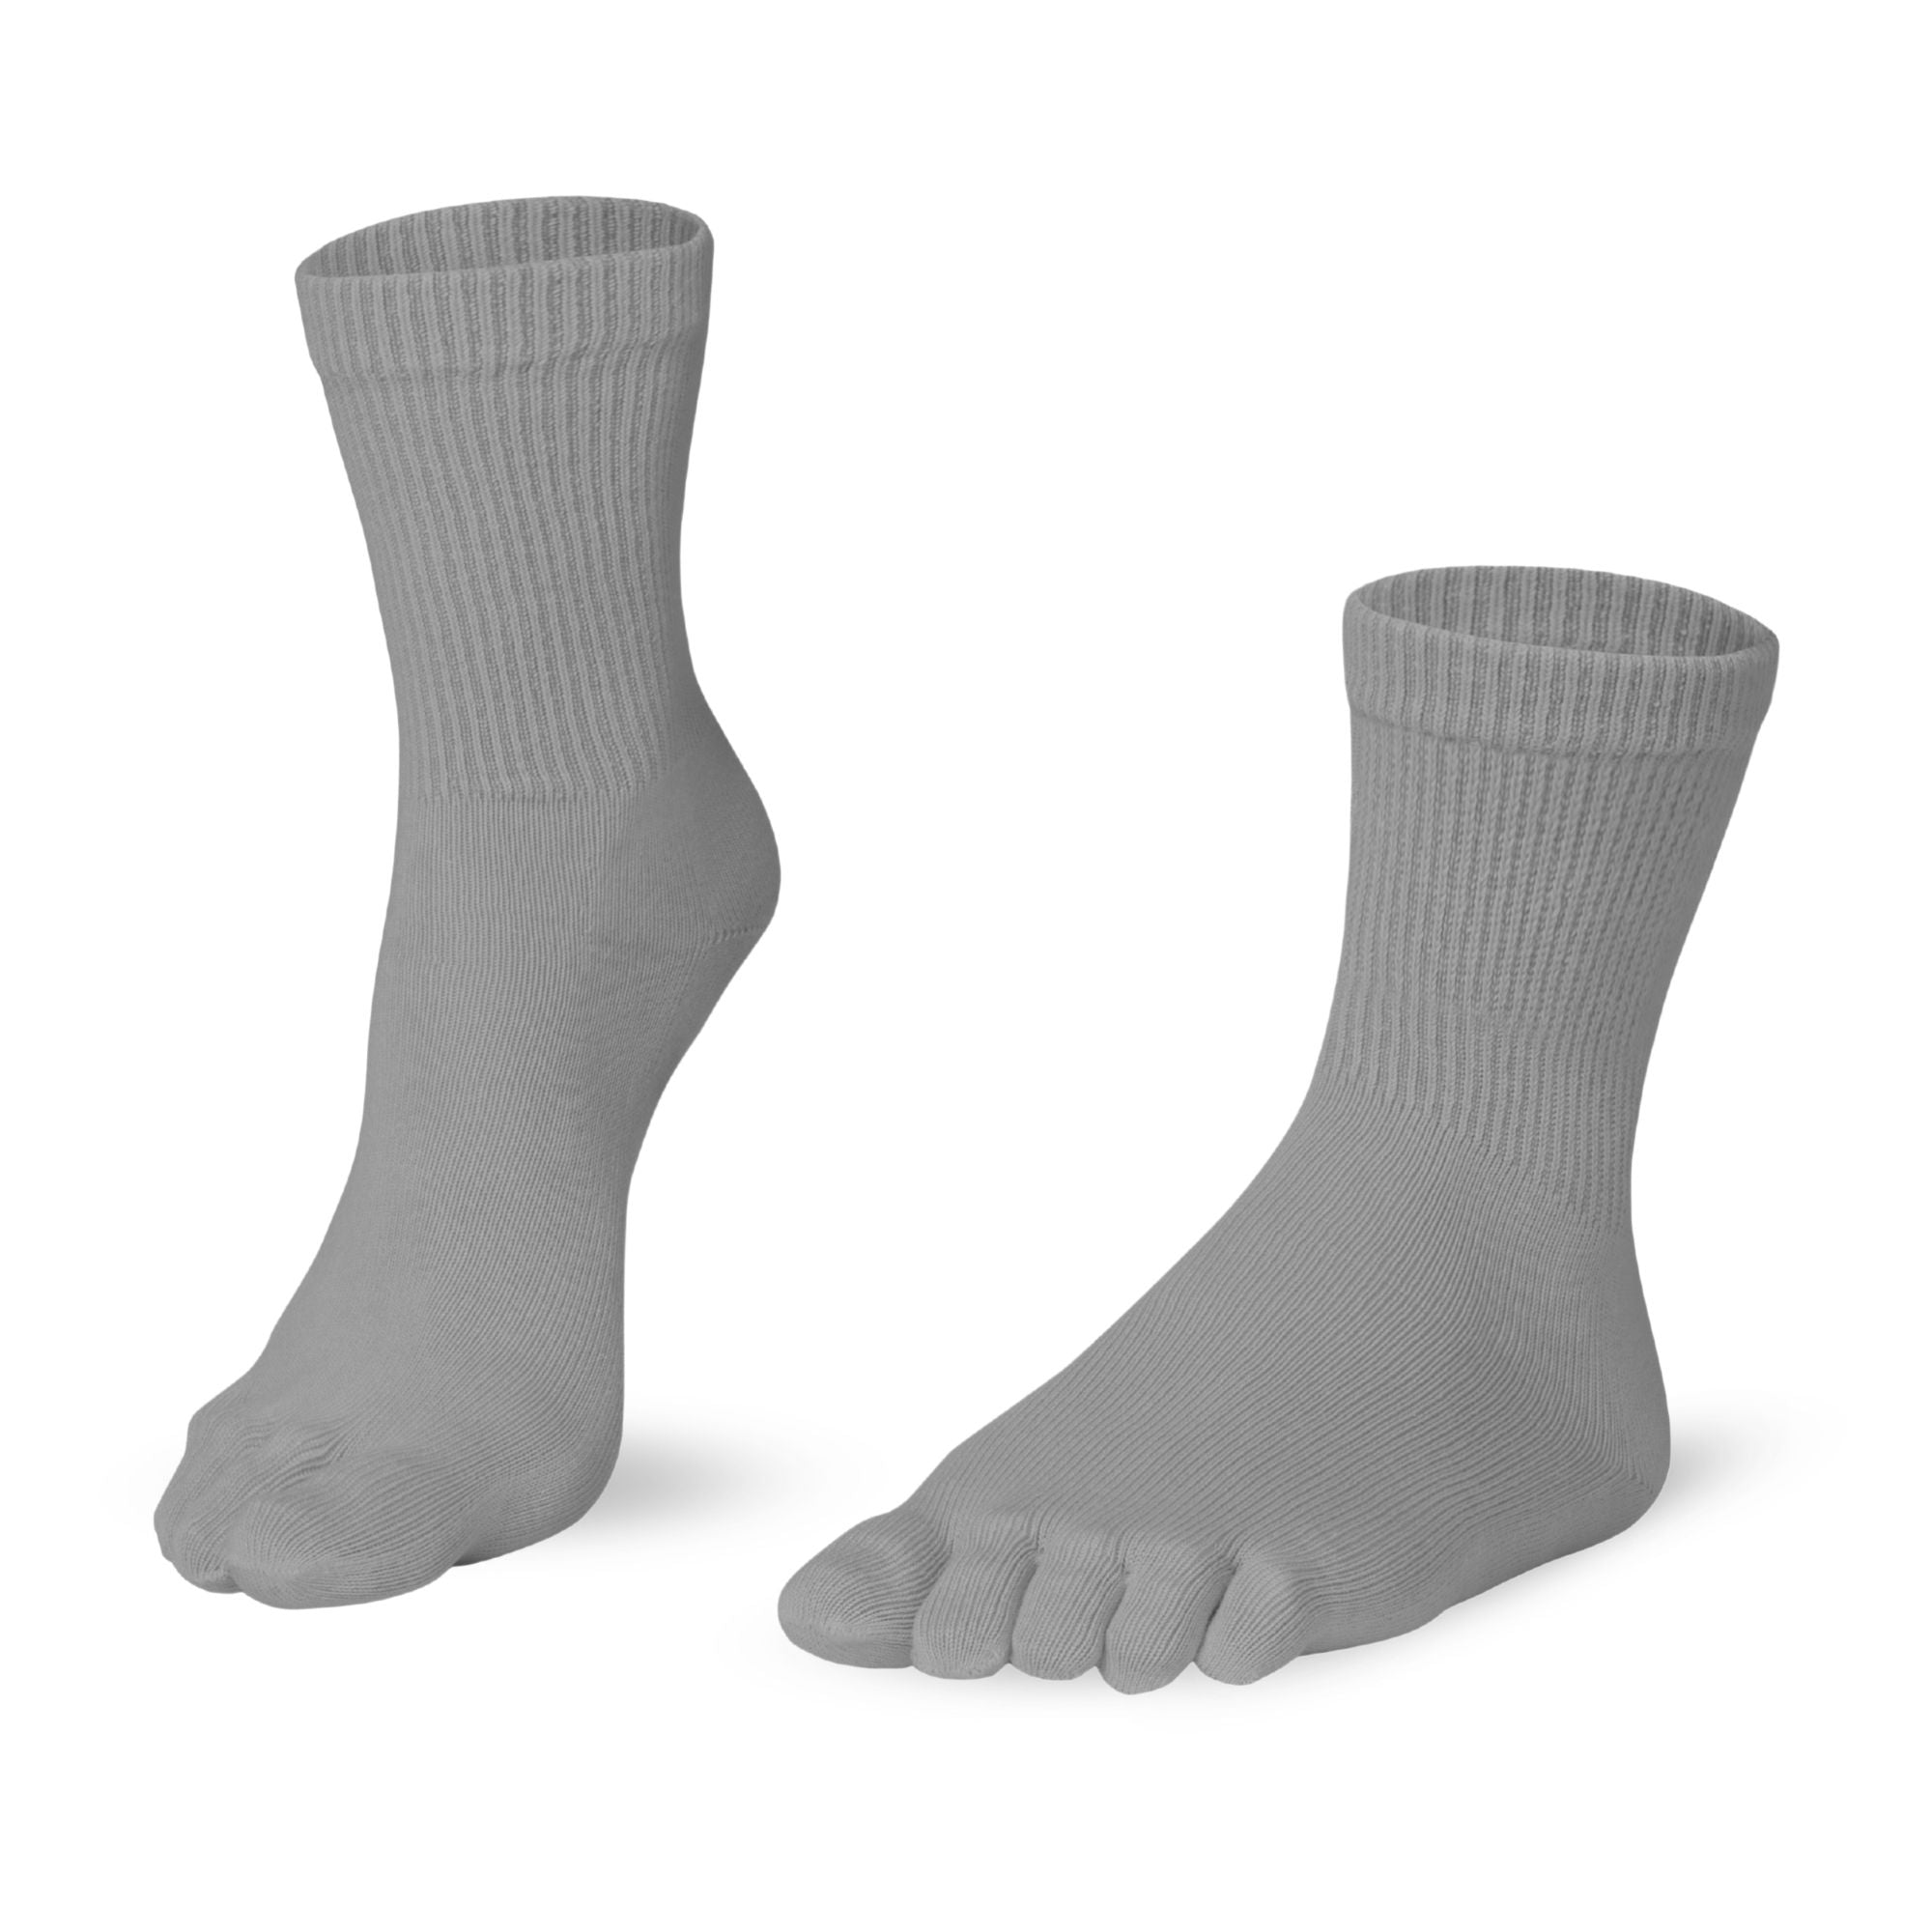 Knitido Essentials Relax longueur mollet confortchaussettes à orteils, couleur grise